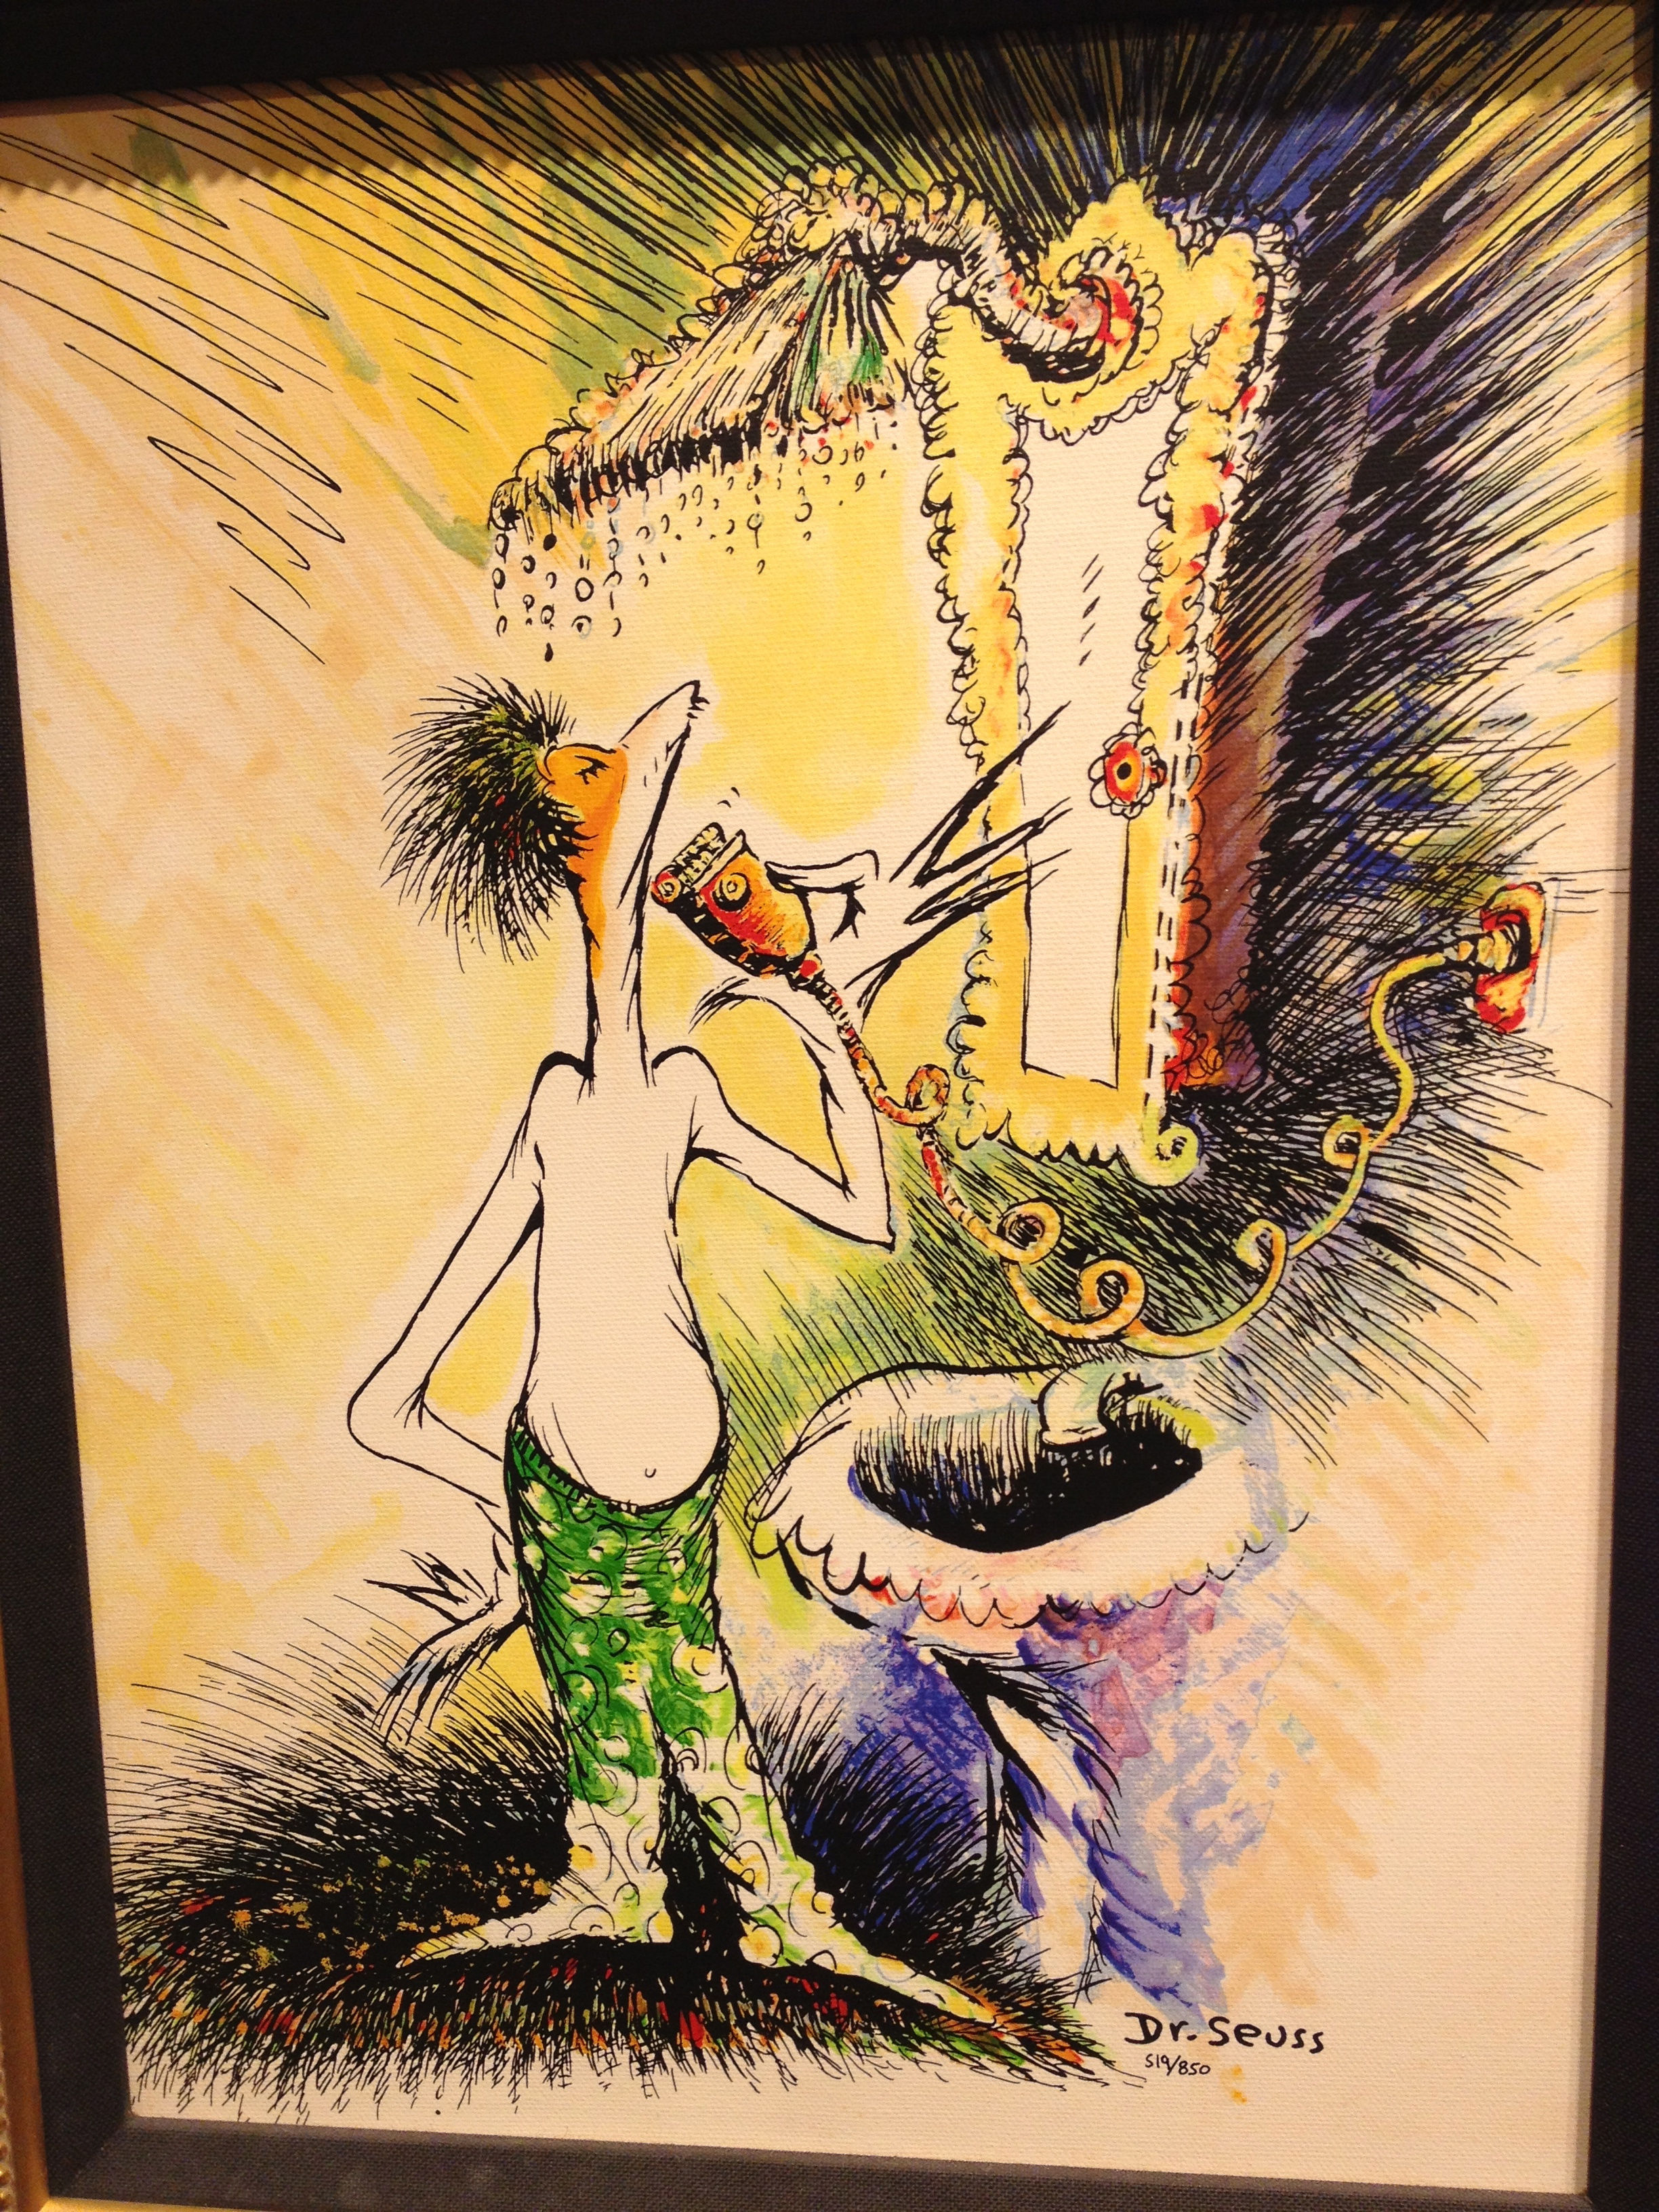 Dr. Seuss exhibit in SoHo